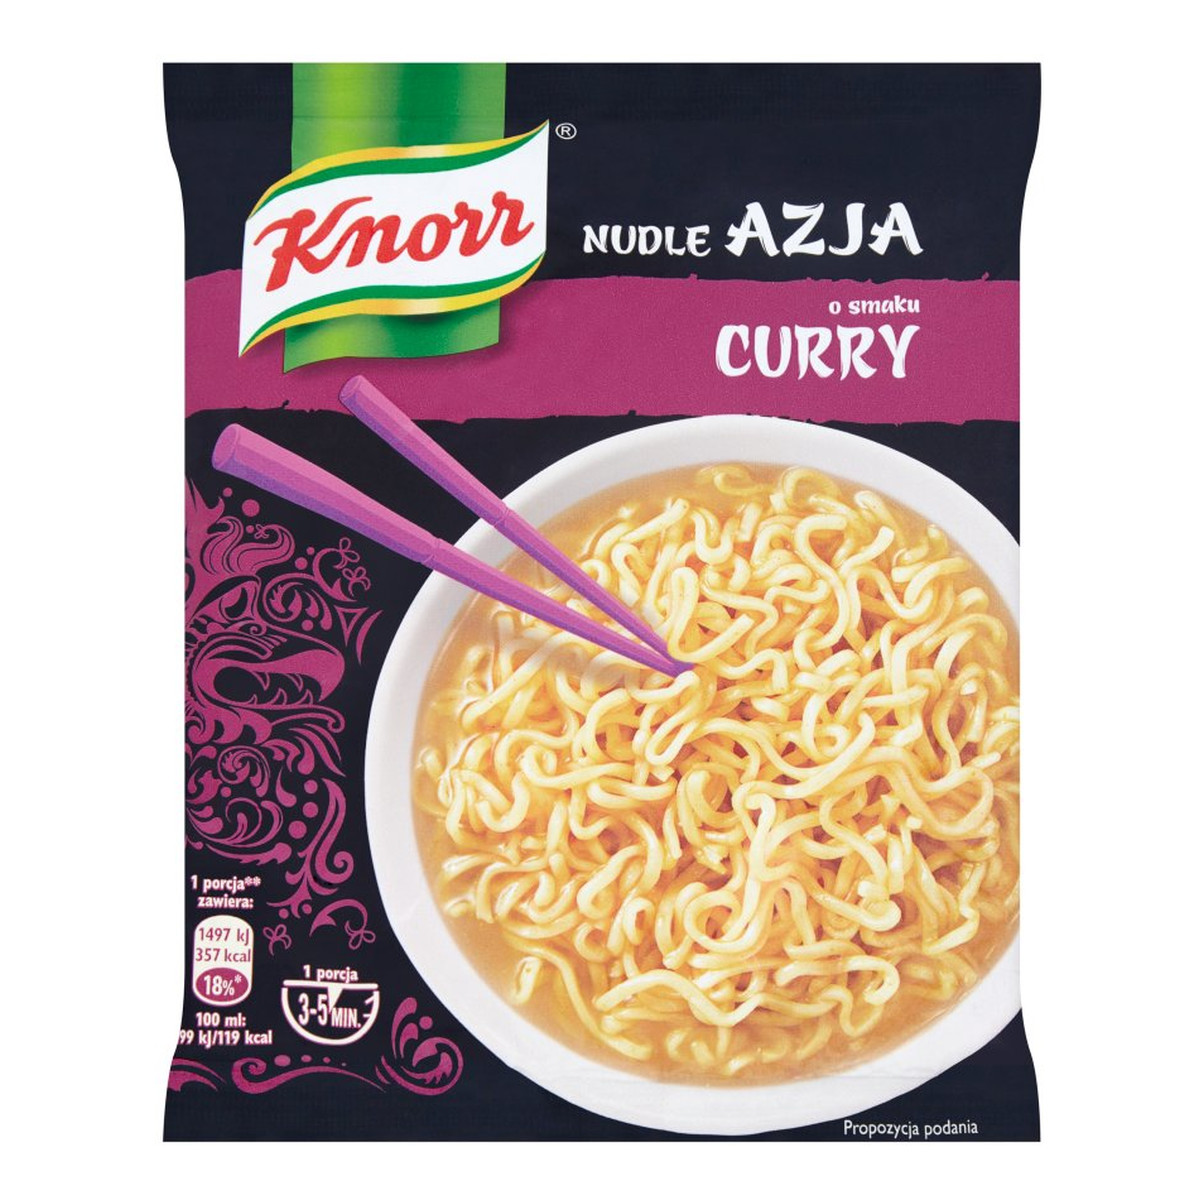 Knorr Nudle Azja Zupa-danie o smaku curry 70g